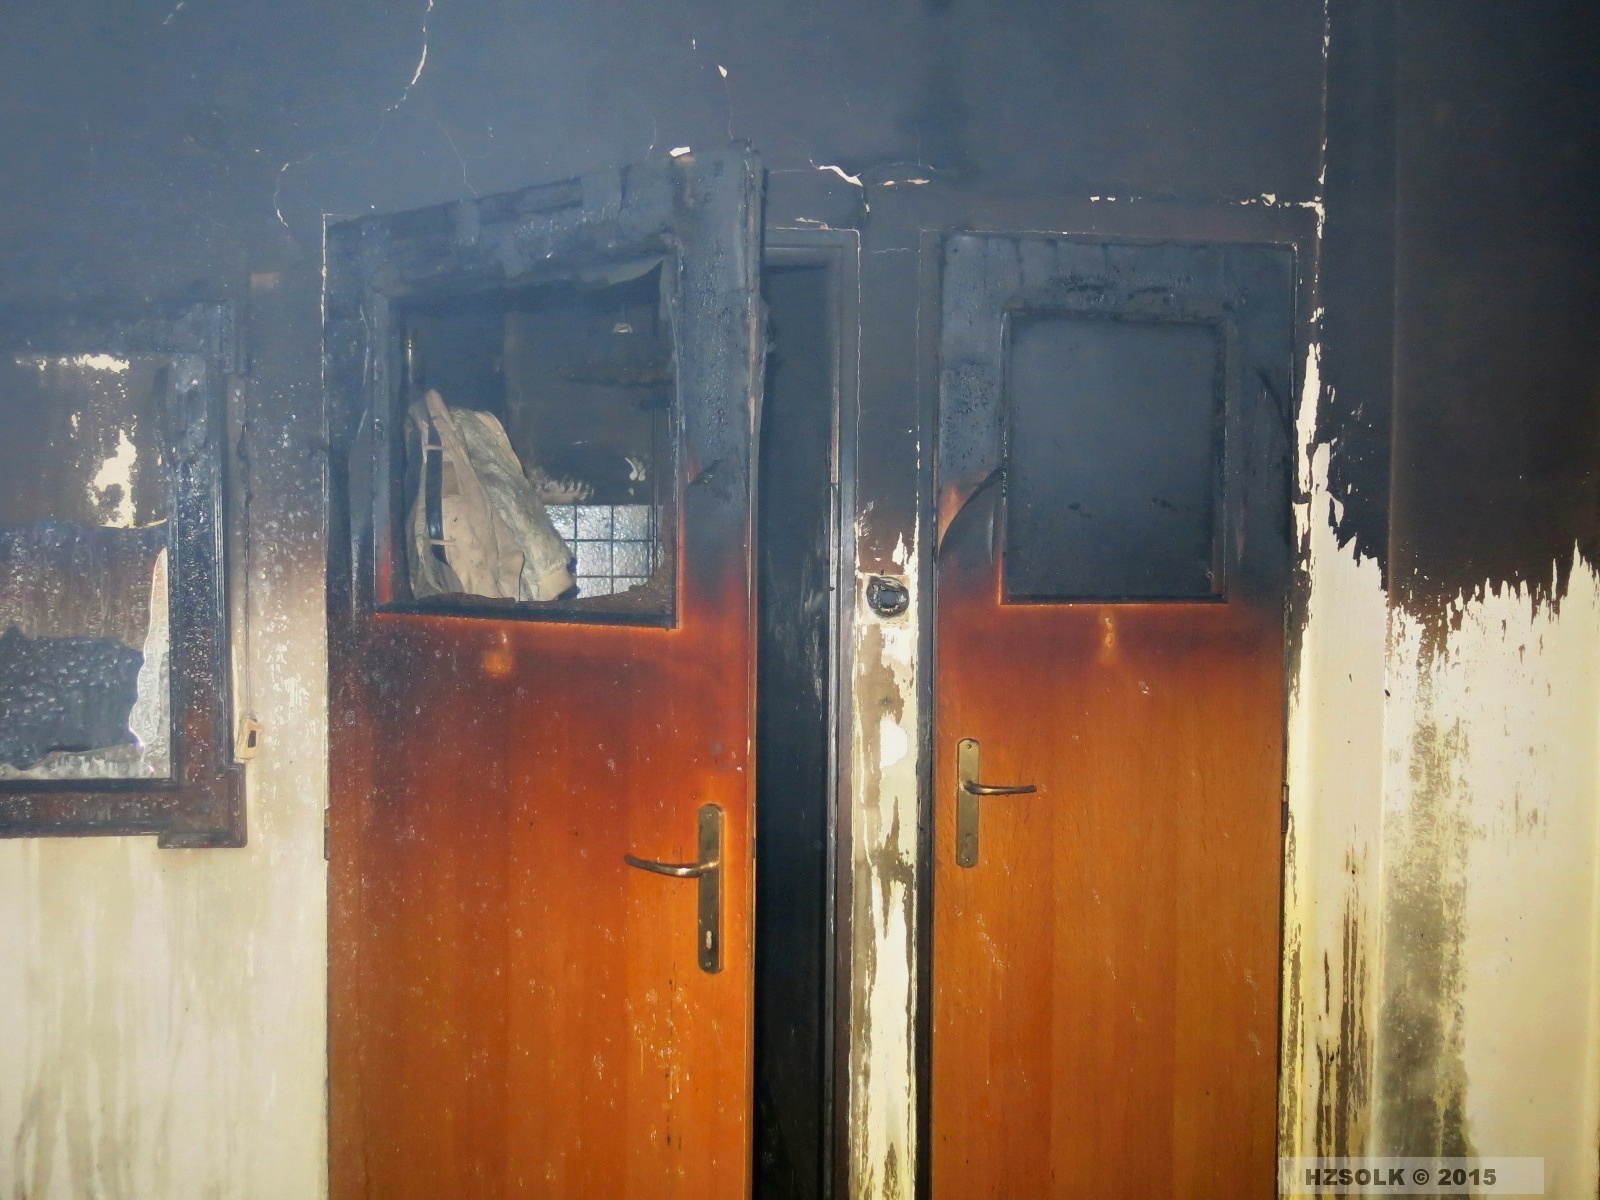 18 P_NB_27-3-2015_požár v rodinném domku Přemyslovice (8).JPG